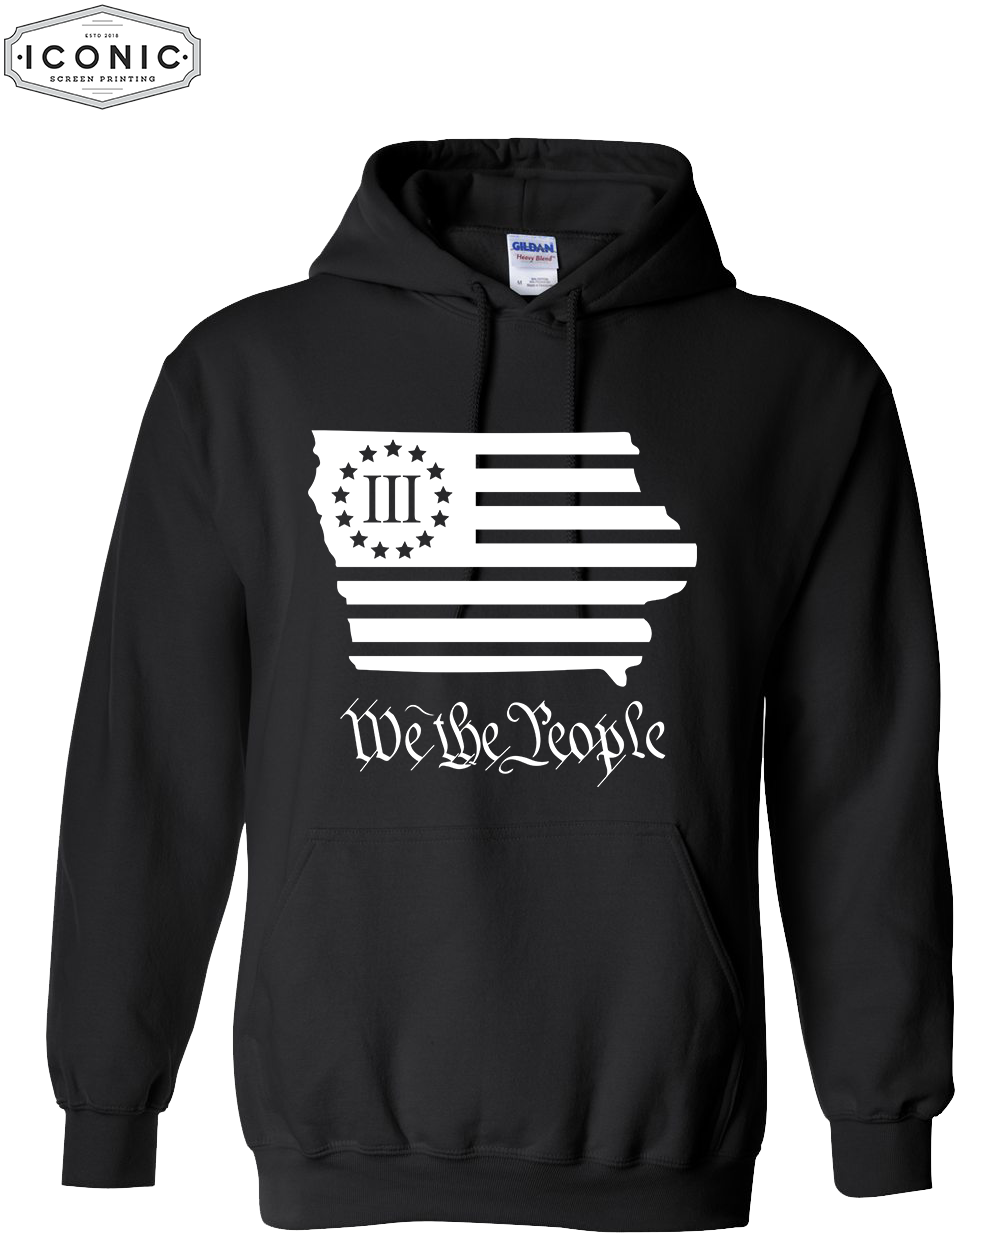 We The People - Heavy Blend Hooded Sweatshirt